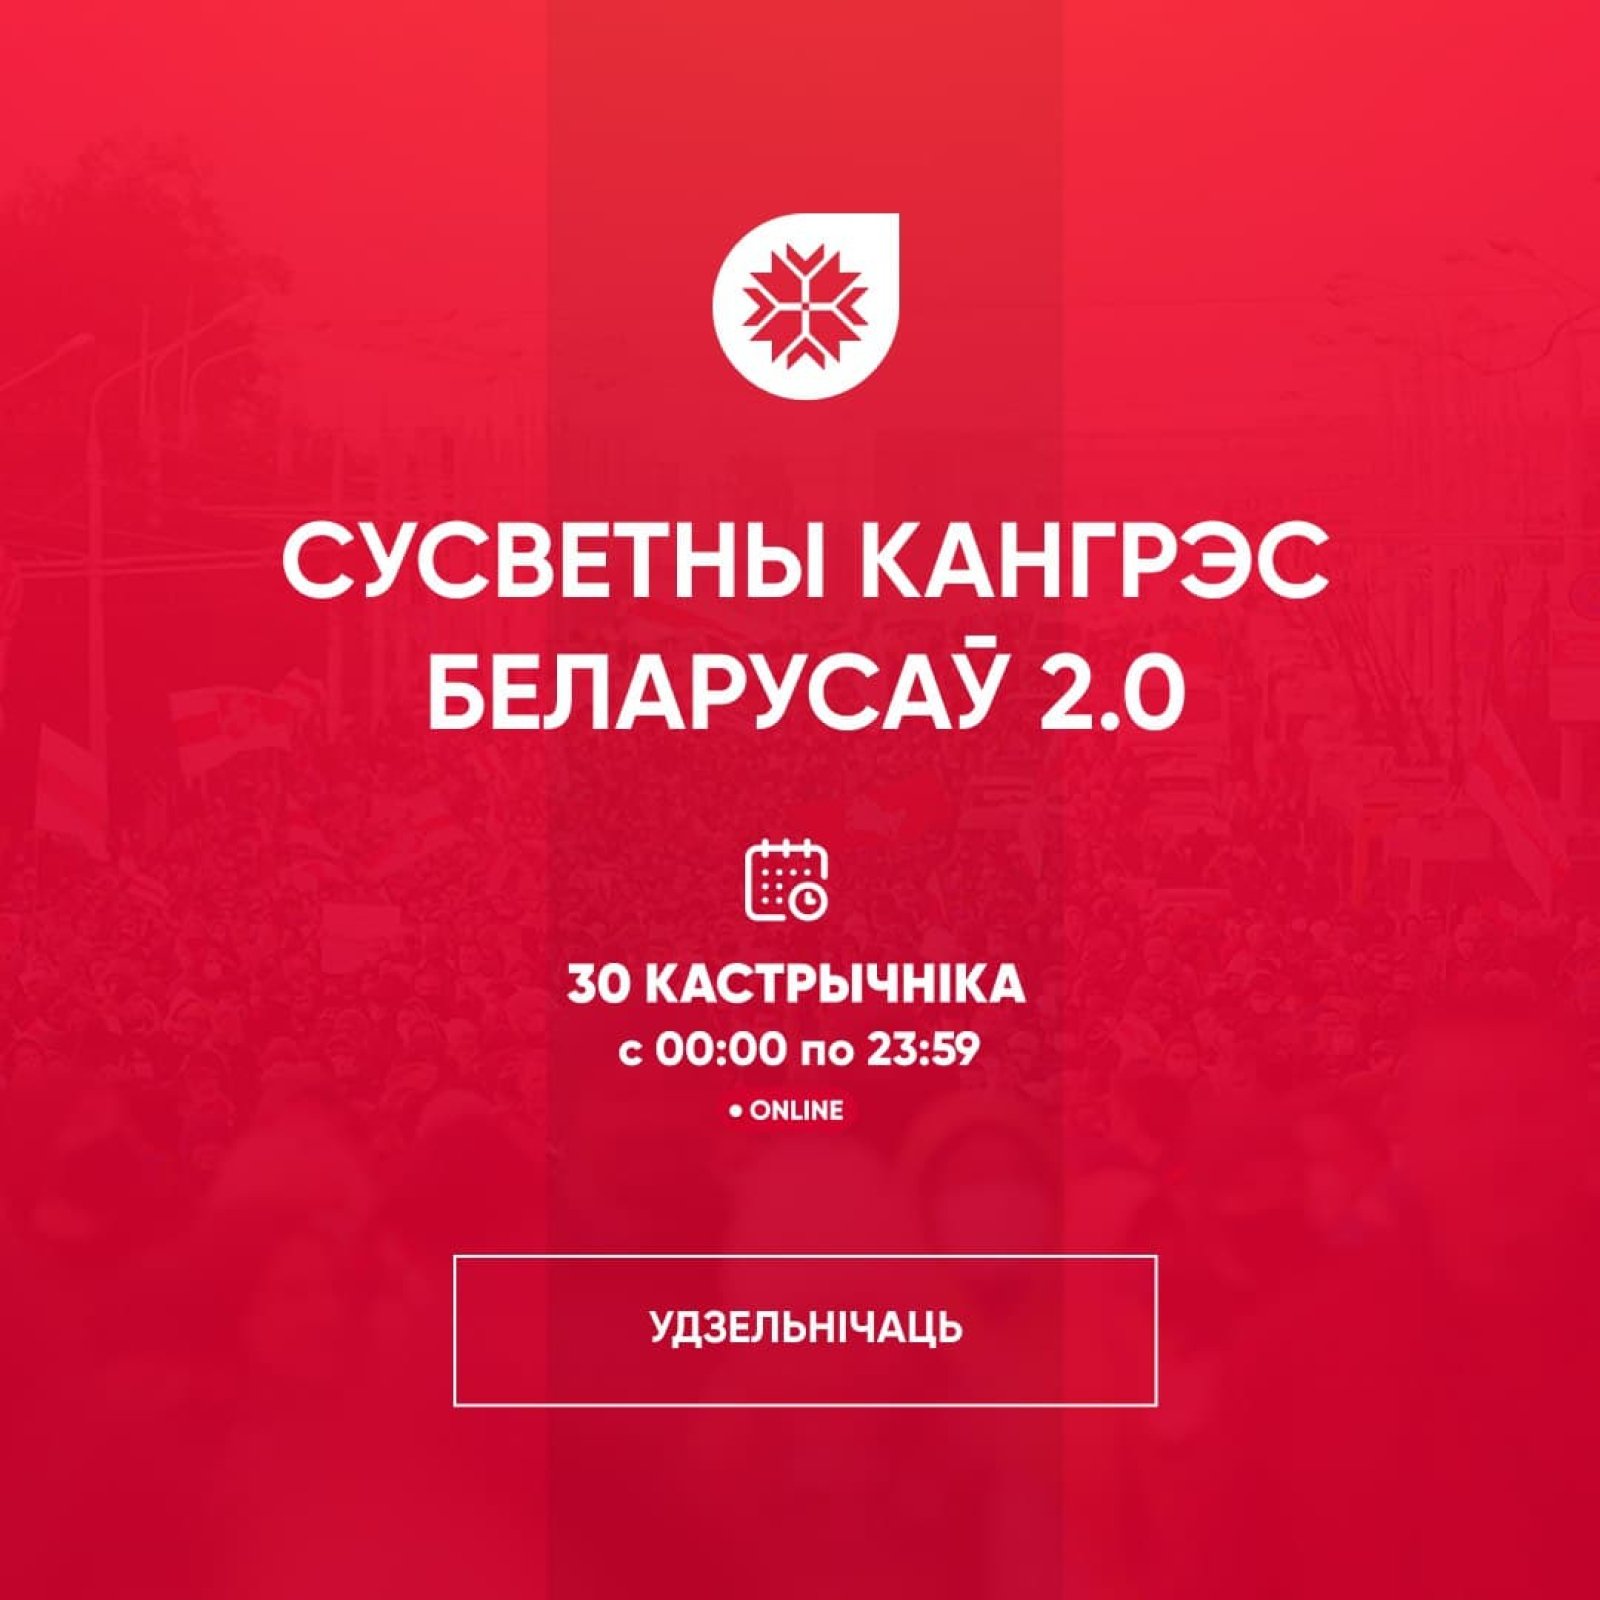 World Congress of Belarusians 2.0